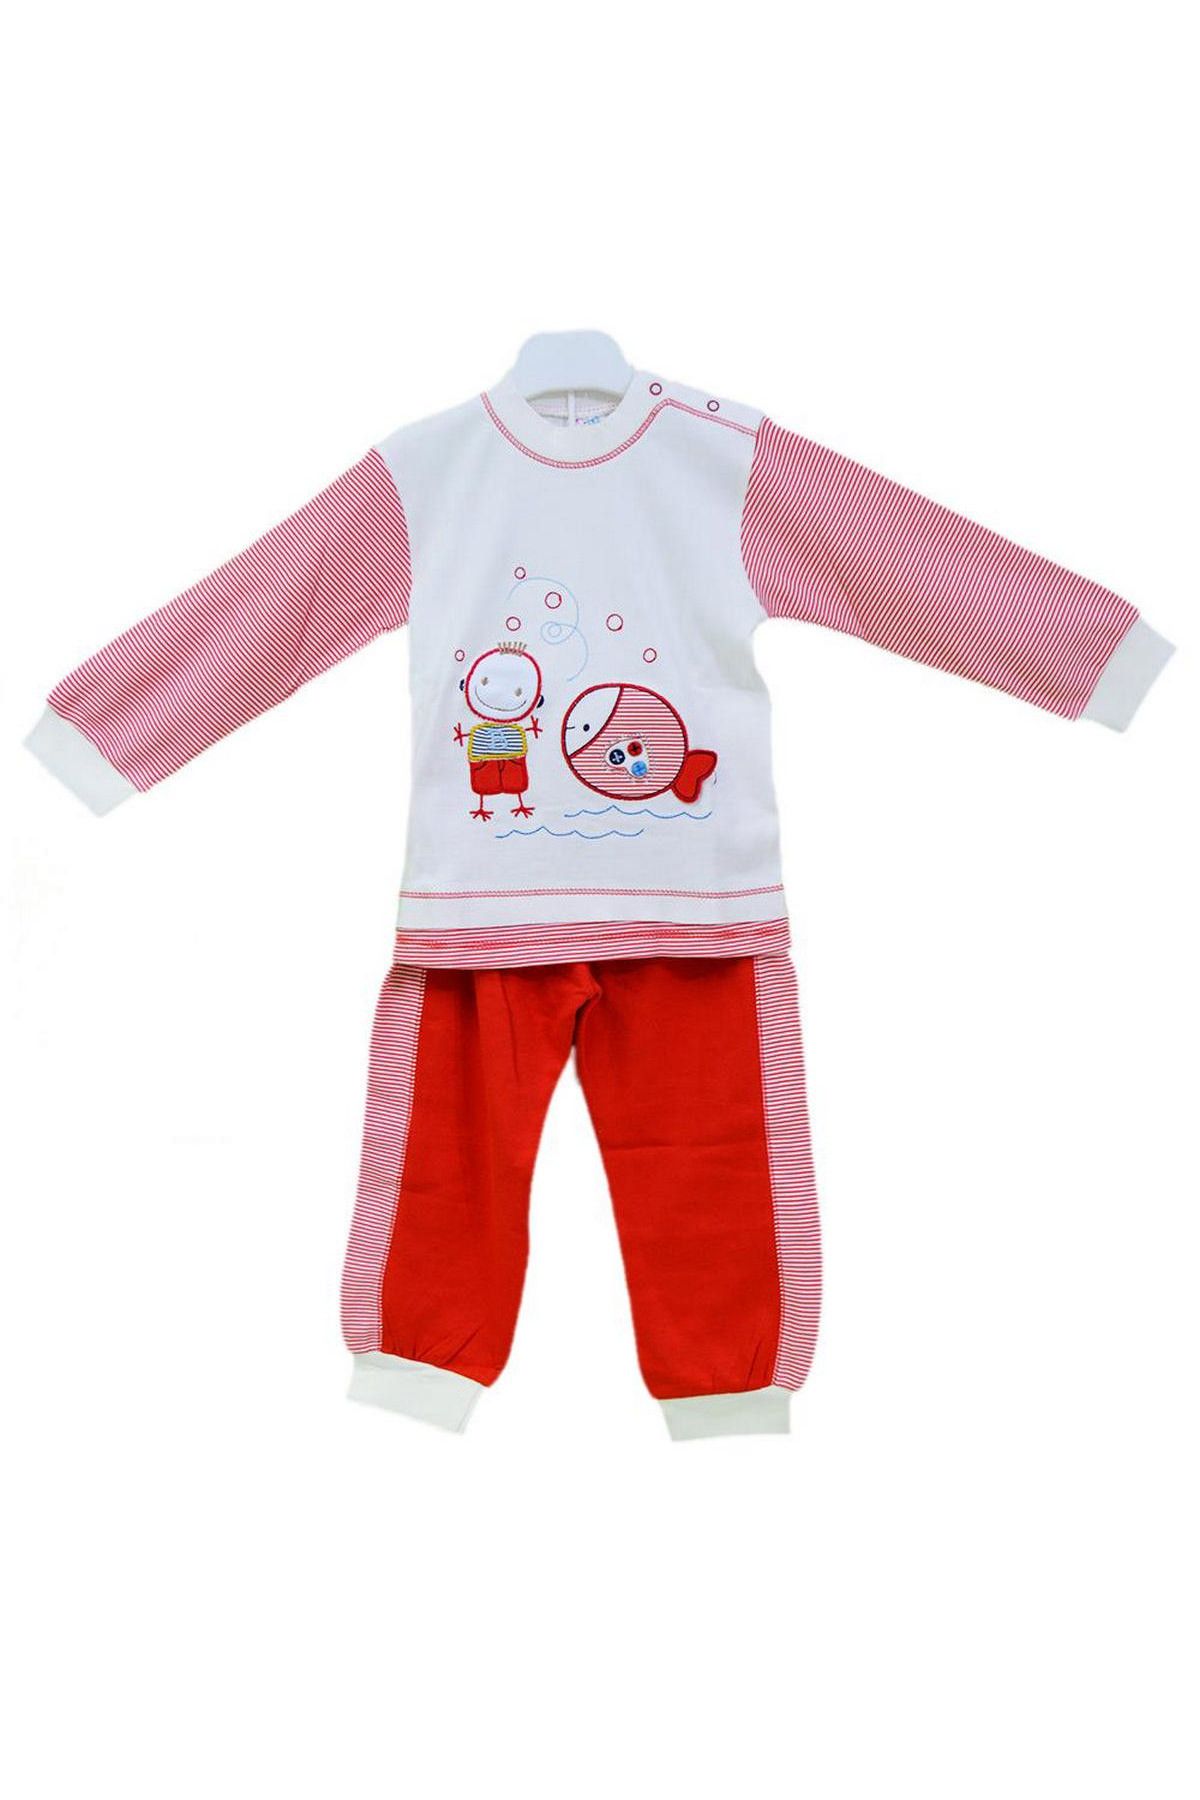 Misket 2375 Bebek Pijama Takımı